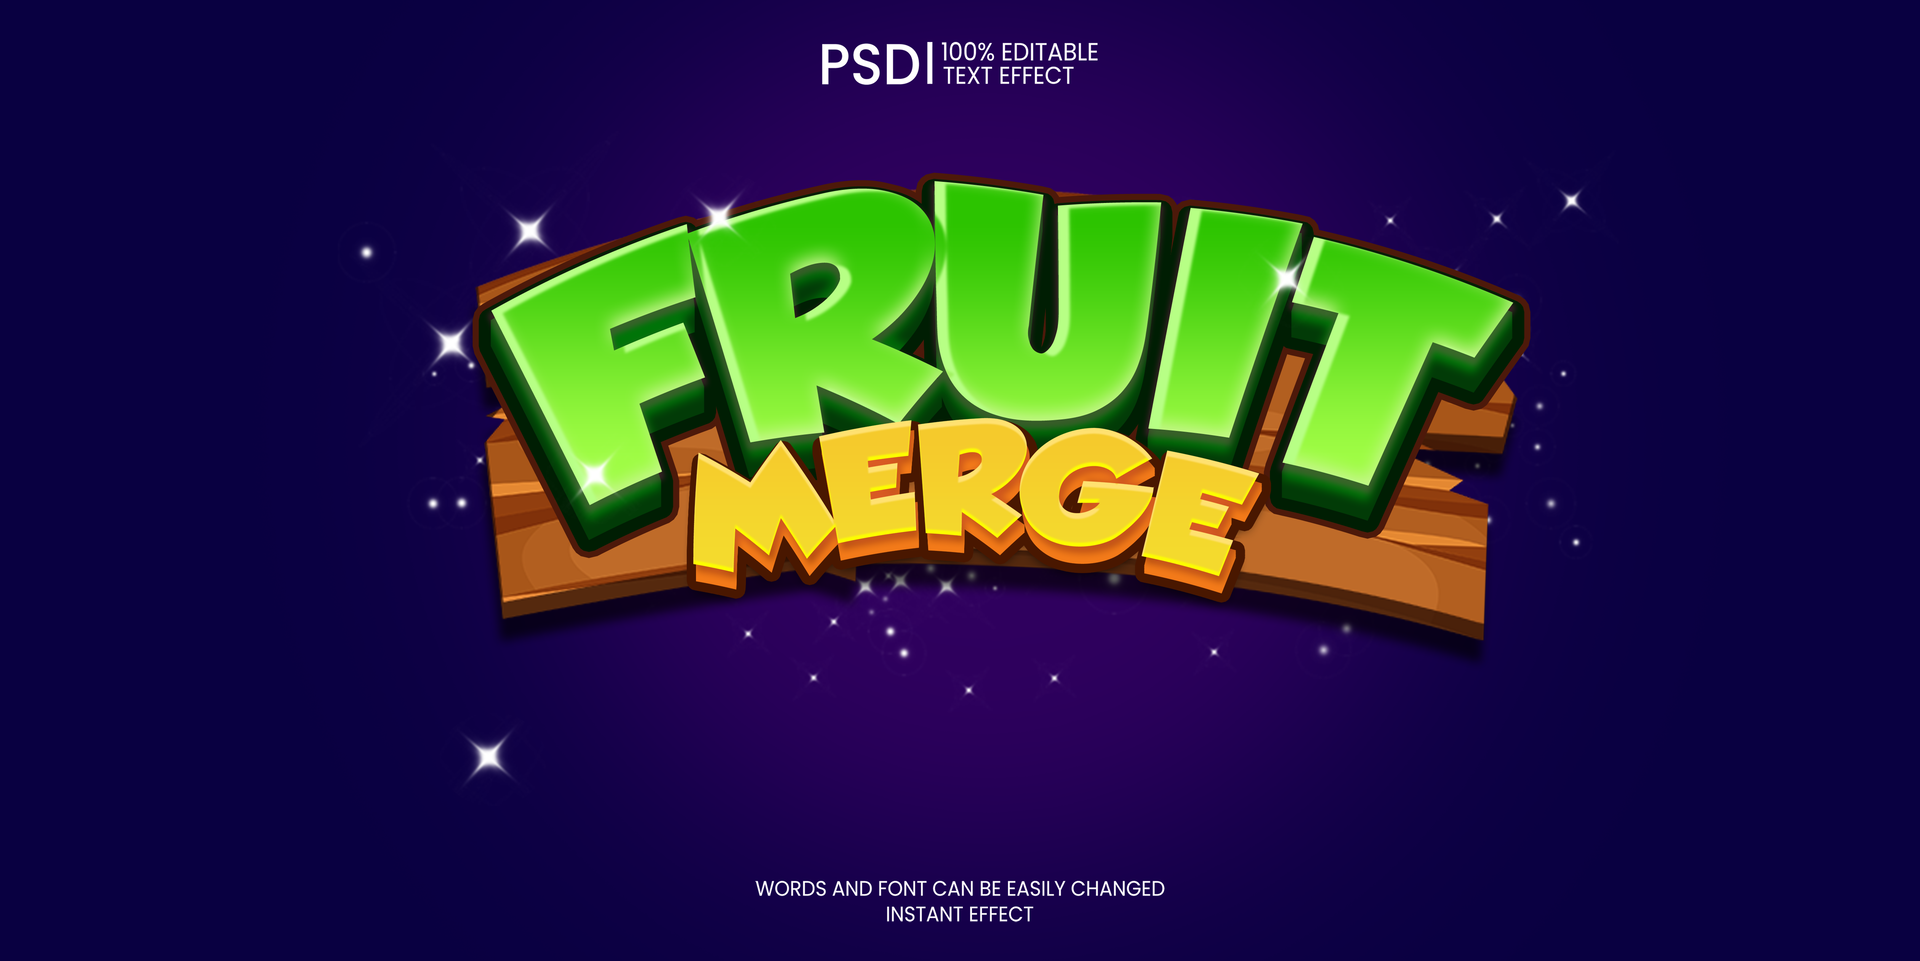 Fruta unir juego editable texto efecto psd juego de azar logo psd , casual logo juego editable gratis psd